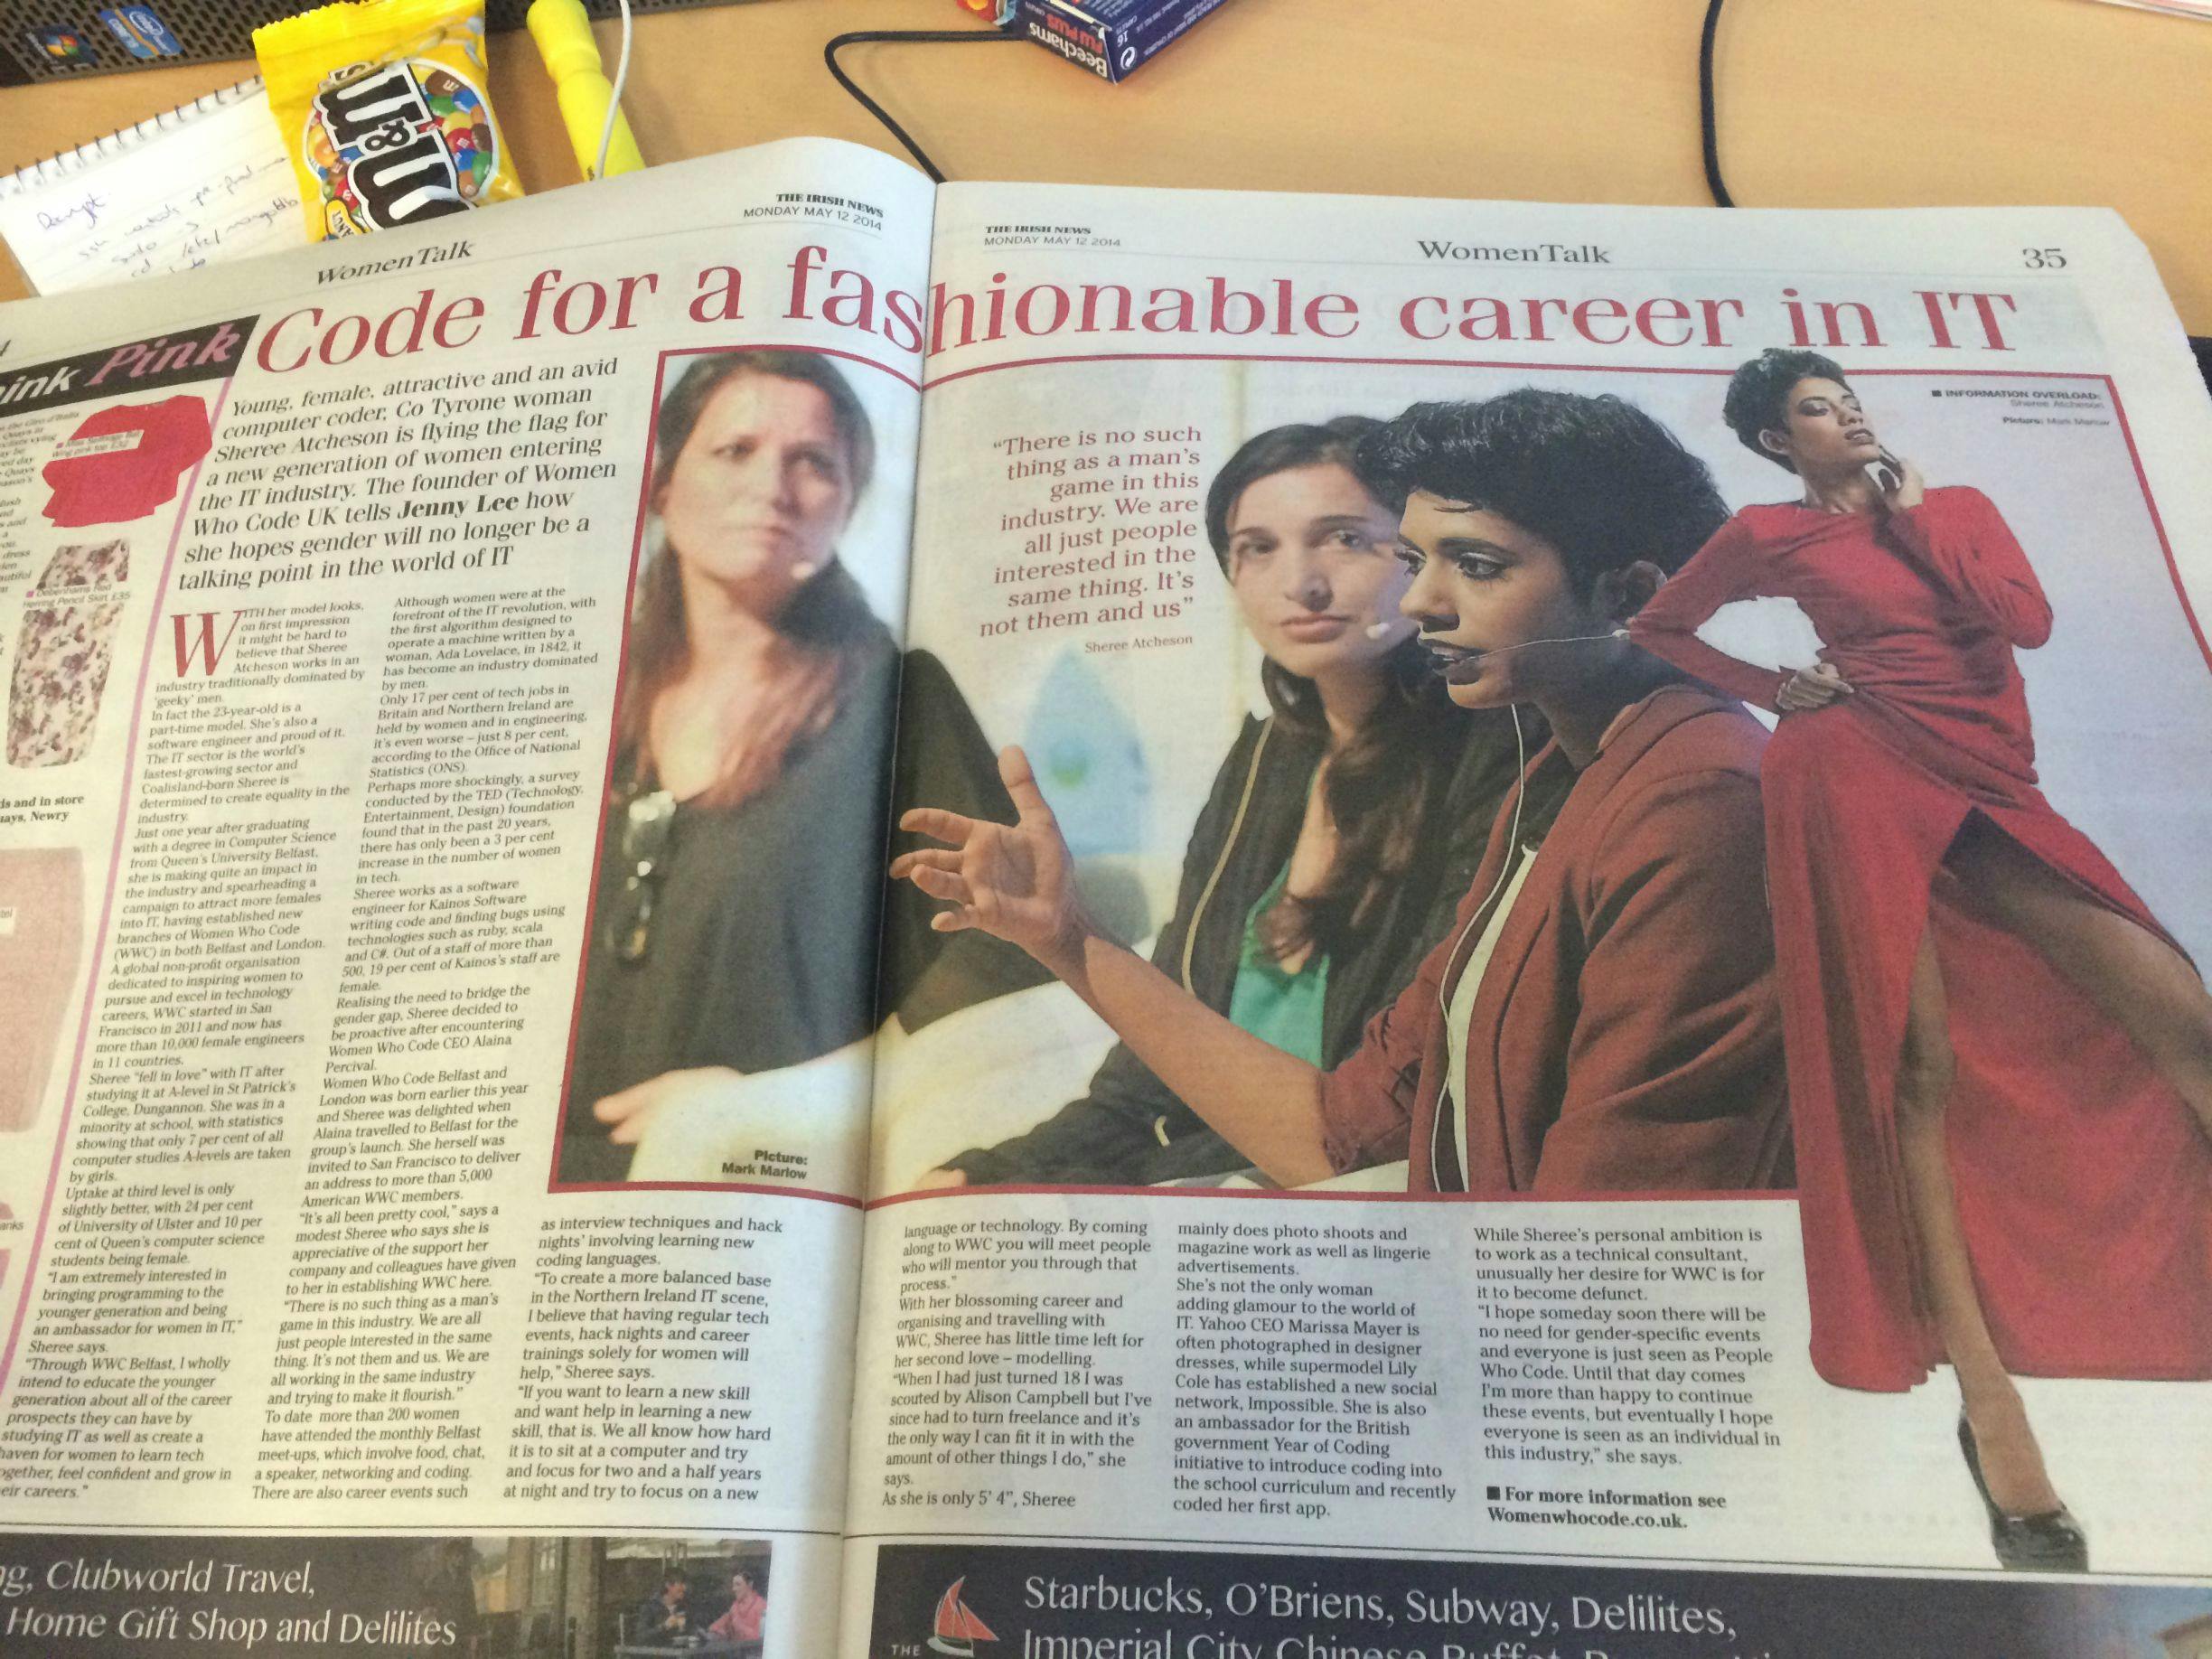 Irish News piece on Women Who Code UK